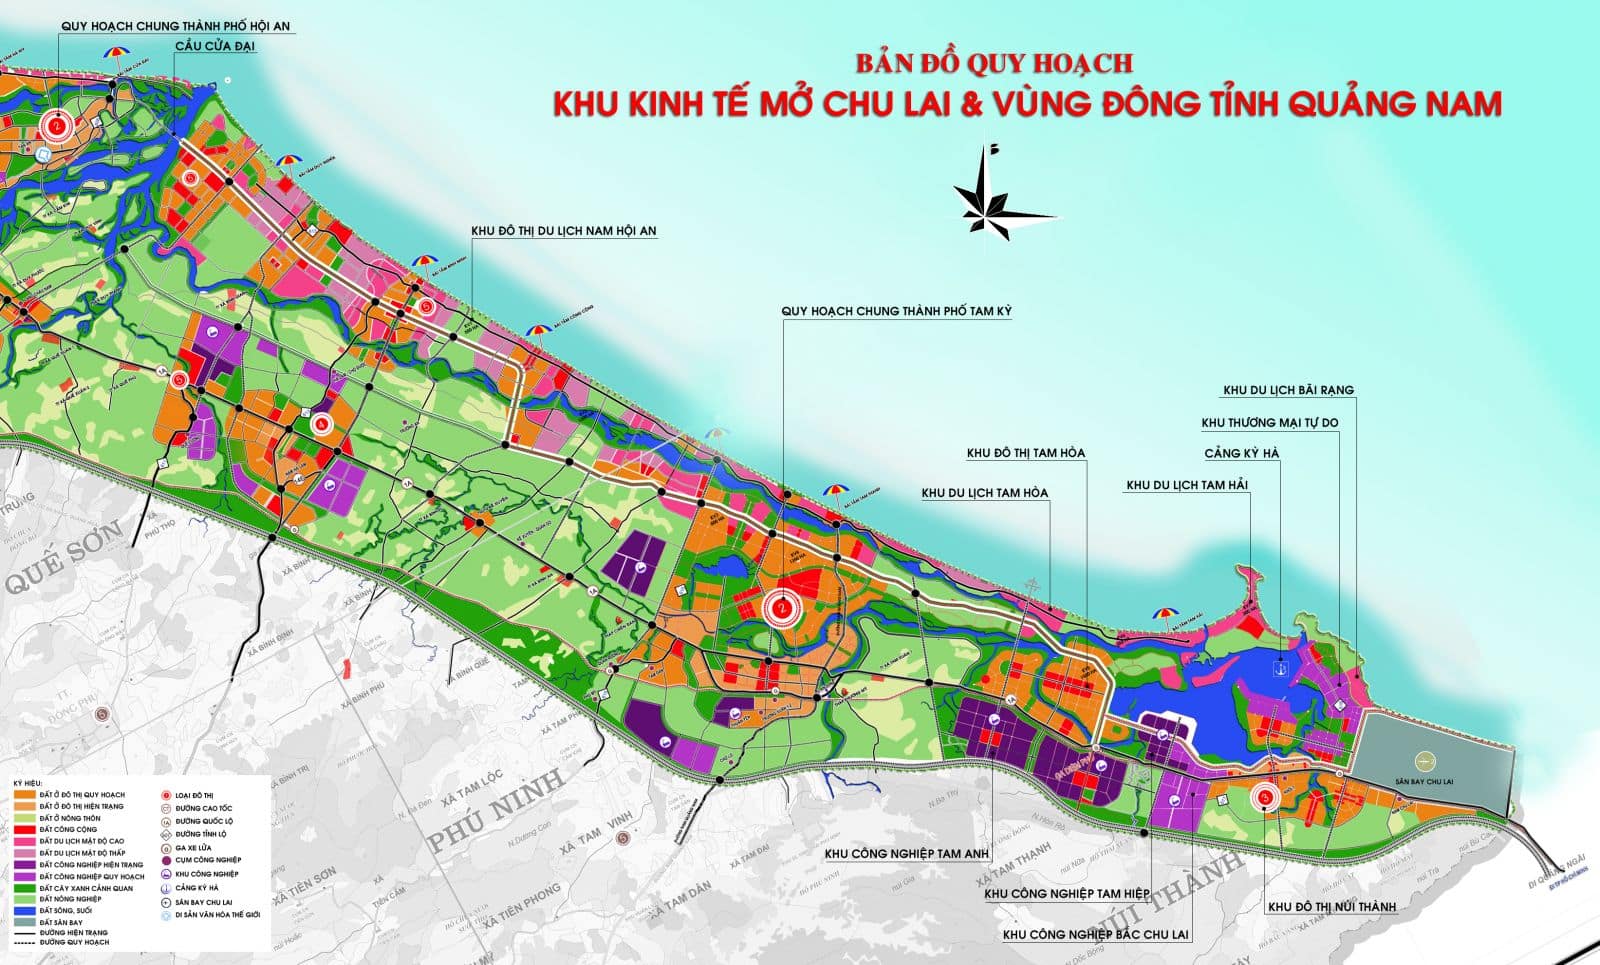 Theo quy hoạch chung, Thăng Bình được xác định thuộc cụm động lực số 2 hành lang kinh tế, có gần 9.000 ha nằm trong Khu kinh tế mở Chu Lai